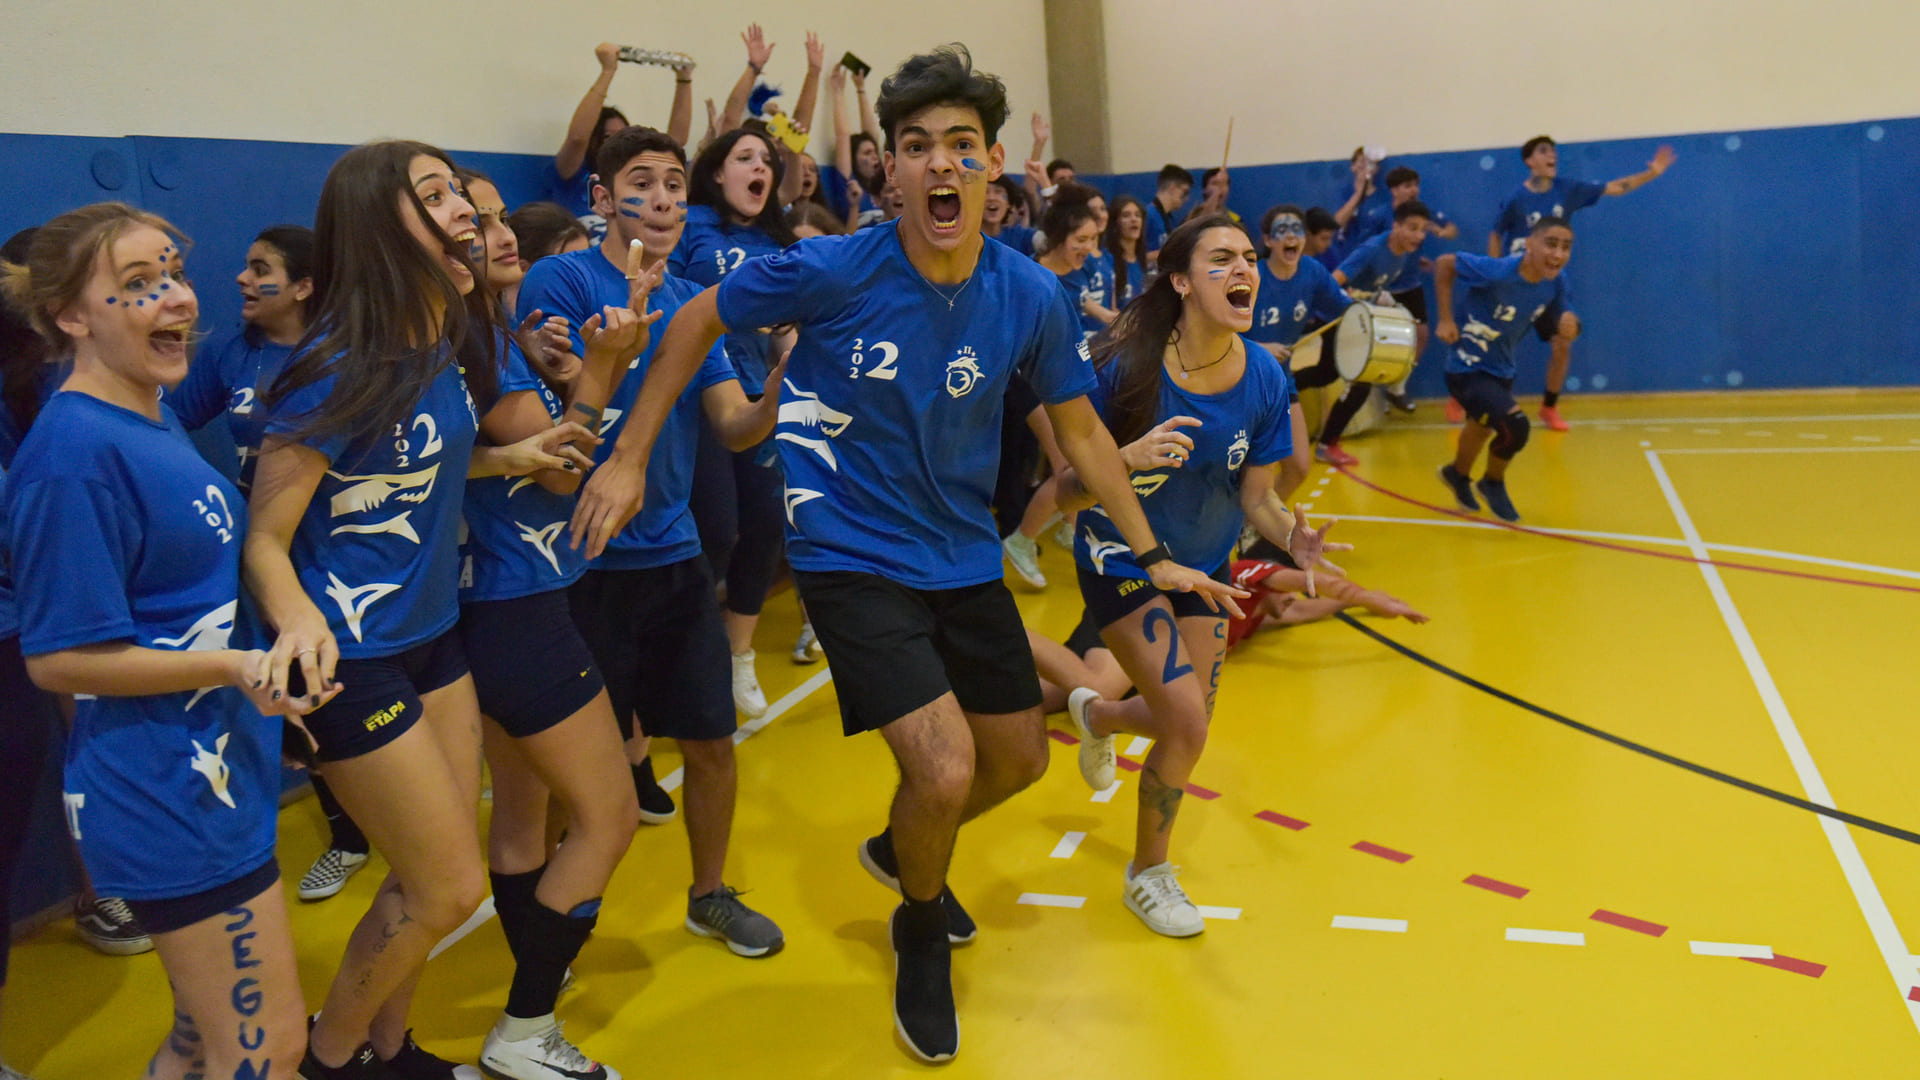 Durante a Gincana Esportiva 2022 em Valinhos, os alunos participaram de jogos de Basquete, Circuito de Habilidades, Futsal, Handebol e Vôlei.